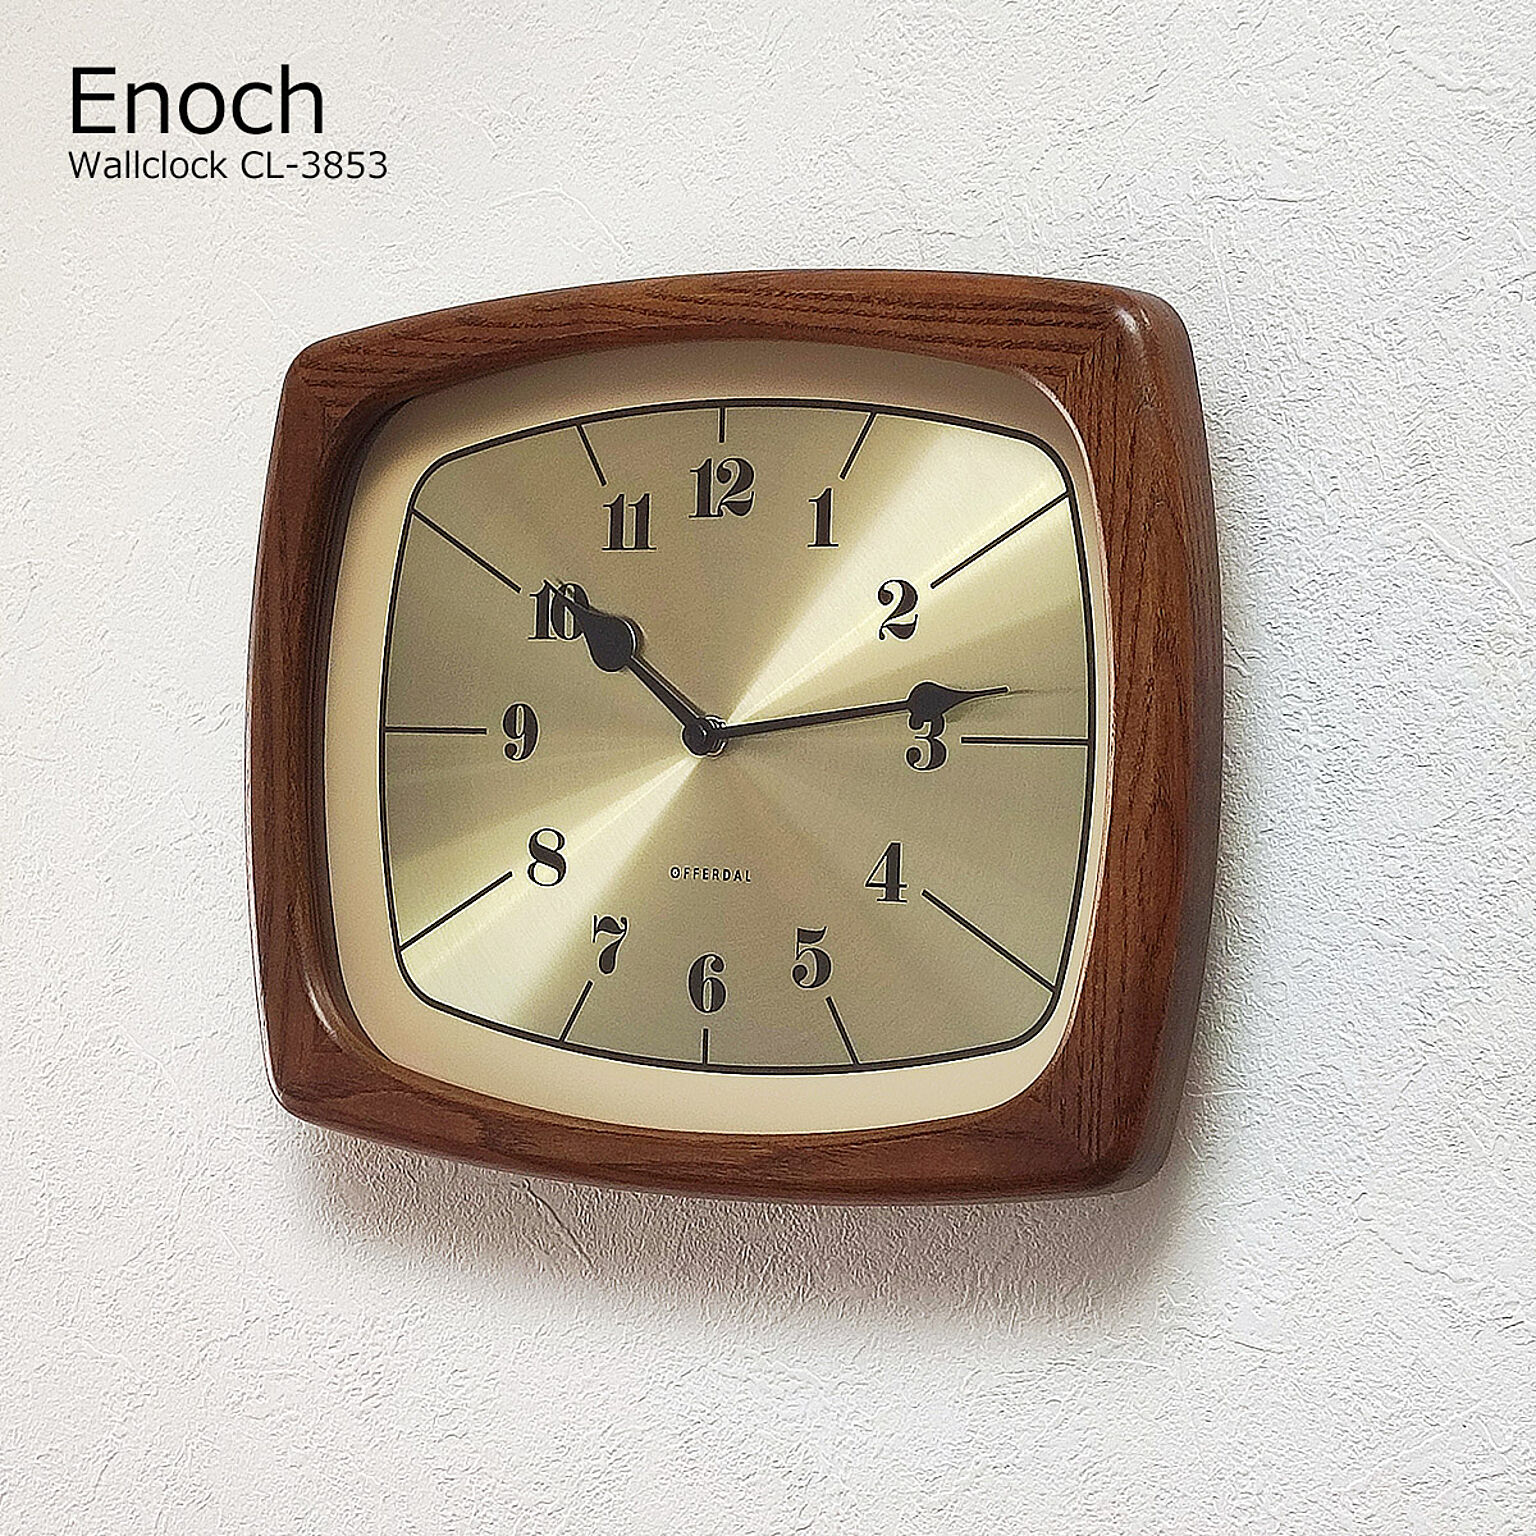 壁掛け時計 おしゃれ 時計 壁掛け 北欧 掛け時計 イーノク Enoch CL-3853 モダン レトロ アンティーク ヴィンテージ インテリア 木製 リビング ダイニング 昭和 寝室 静音 